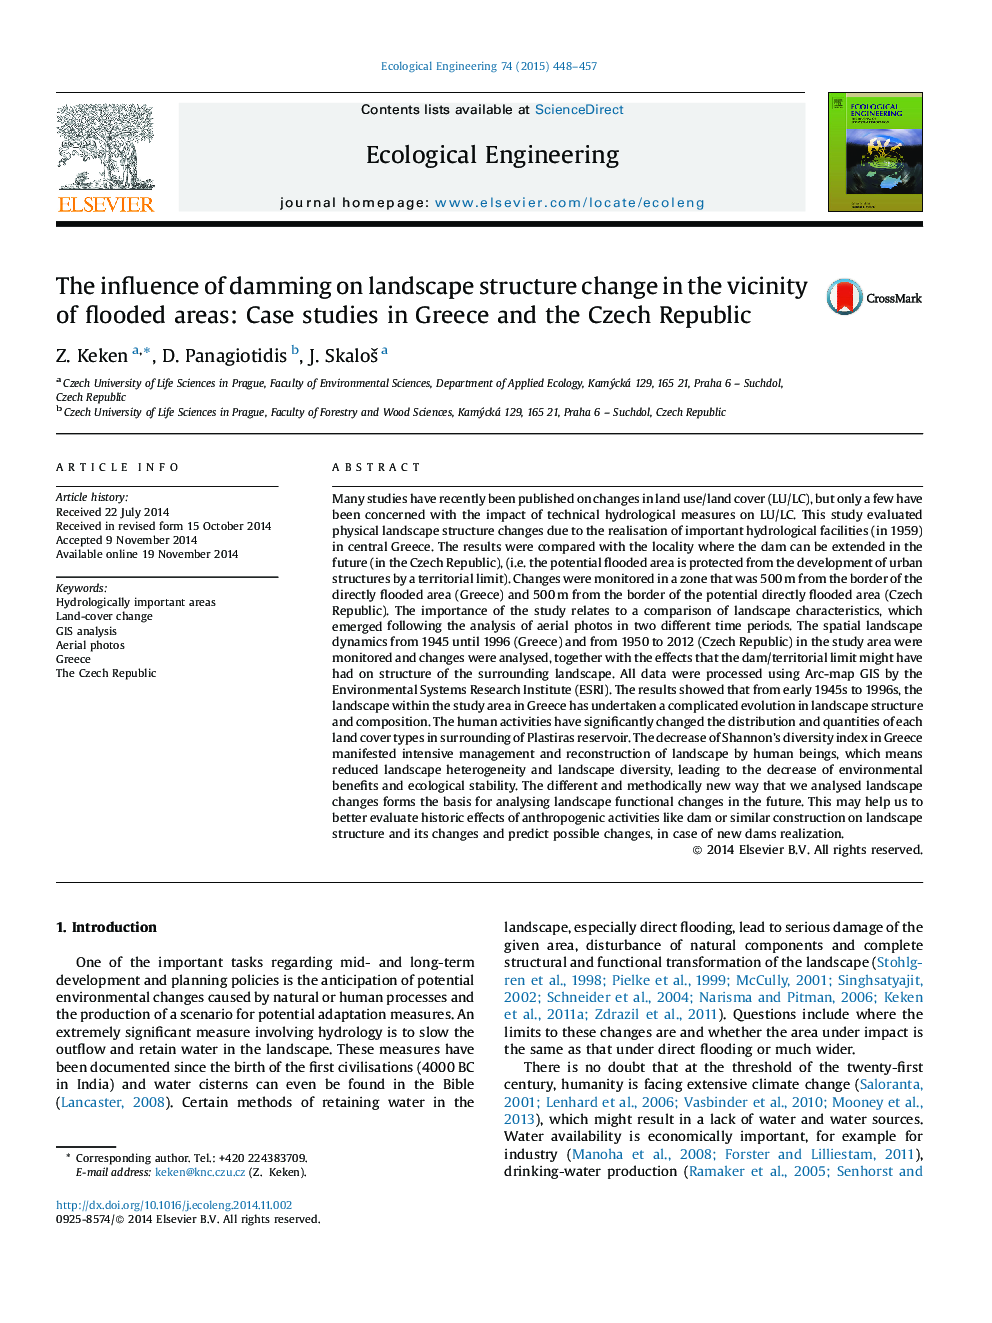 تاثیر سدسازی بر تغییر ساختار چشم انداز در مجاورت مناطق سیل شده: مطالعات موردی در یونان و جمهوری چک 